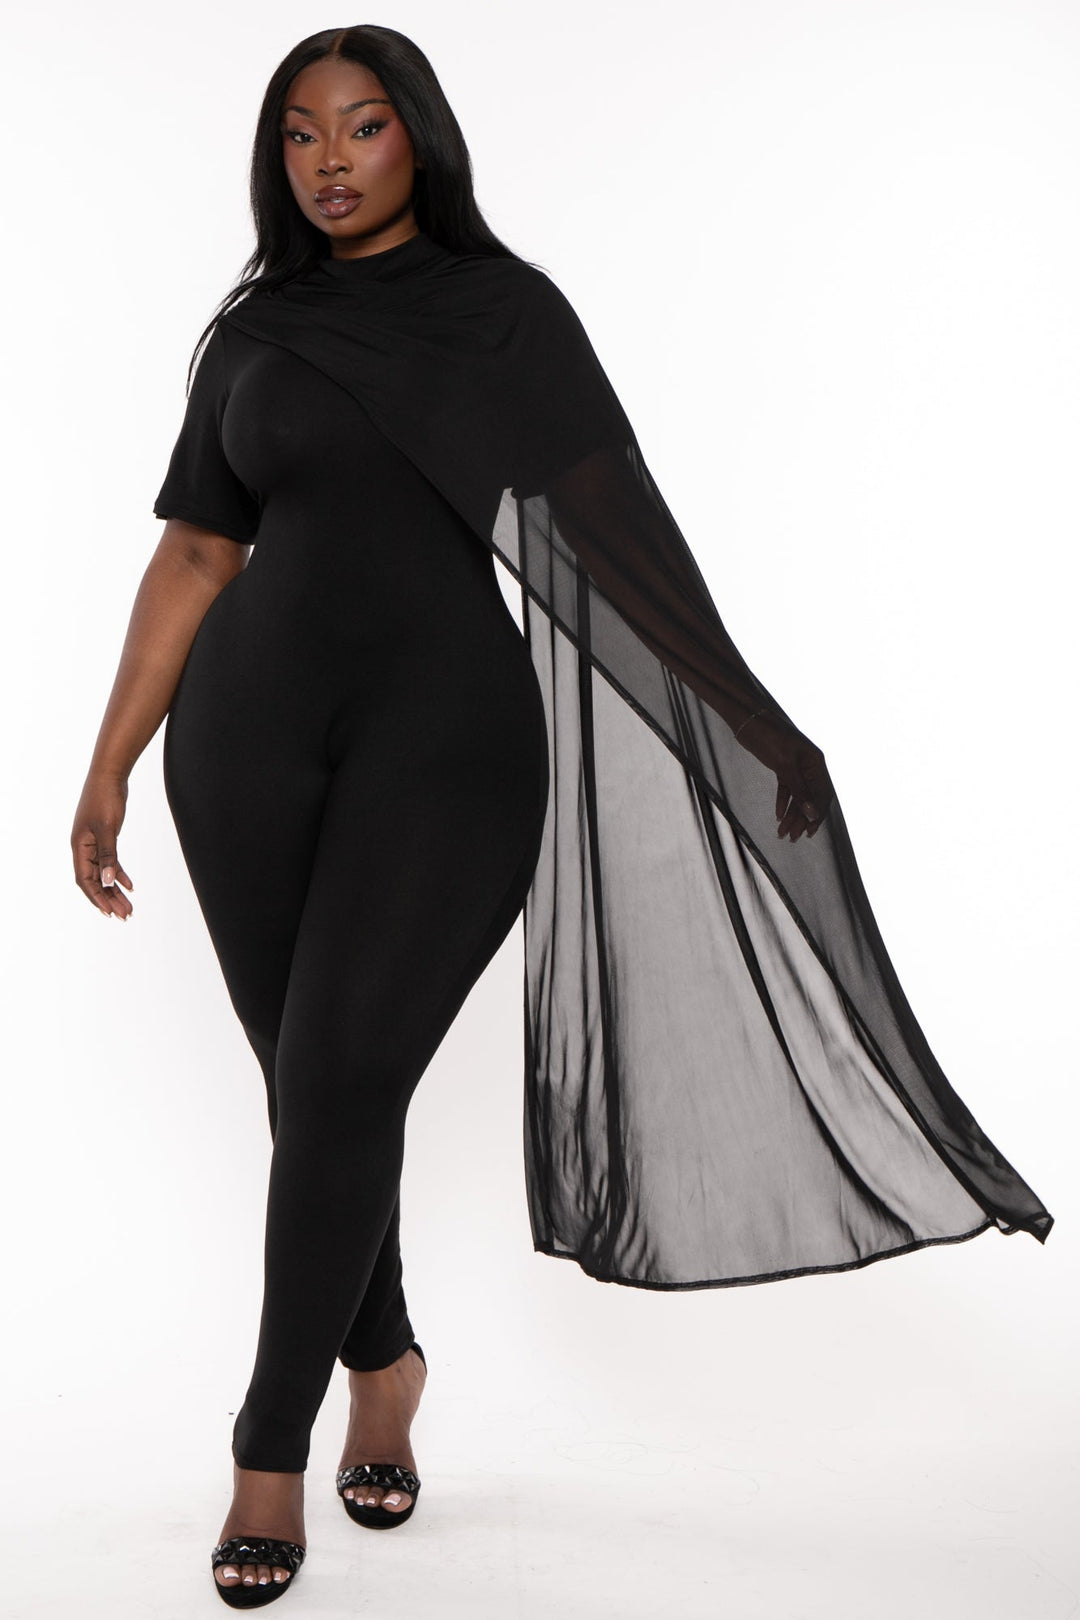 J2 FASHION Dresses Plus Size Dallyn Mesh Drape Jumpsuit- Black